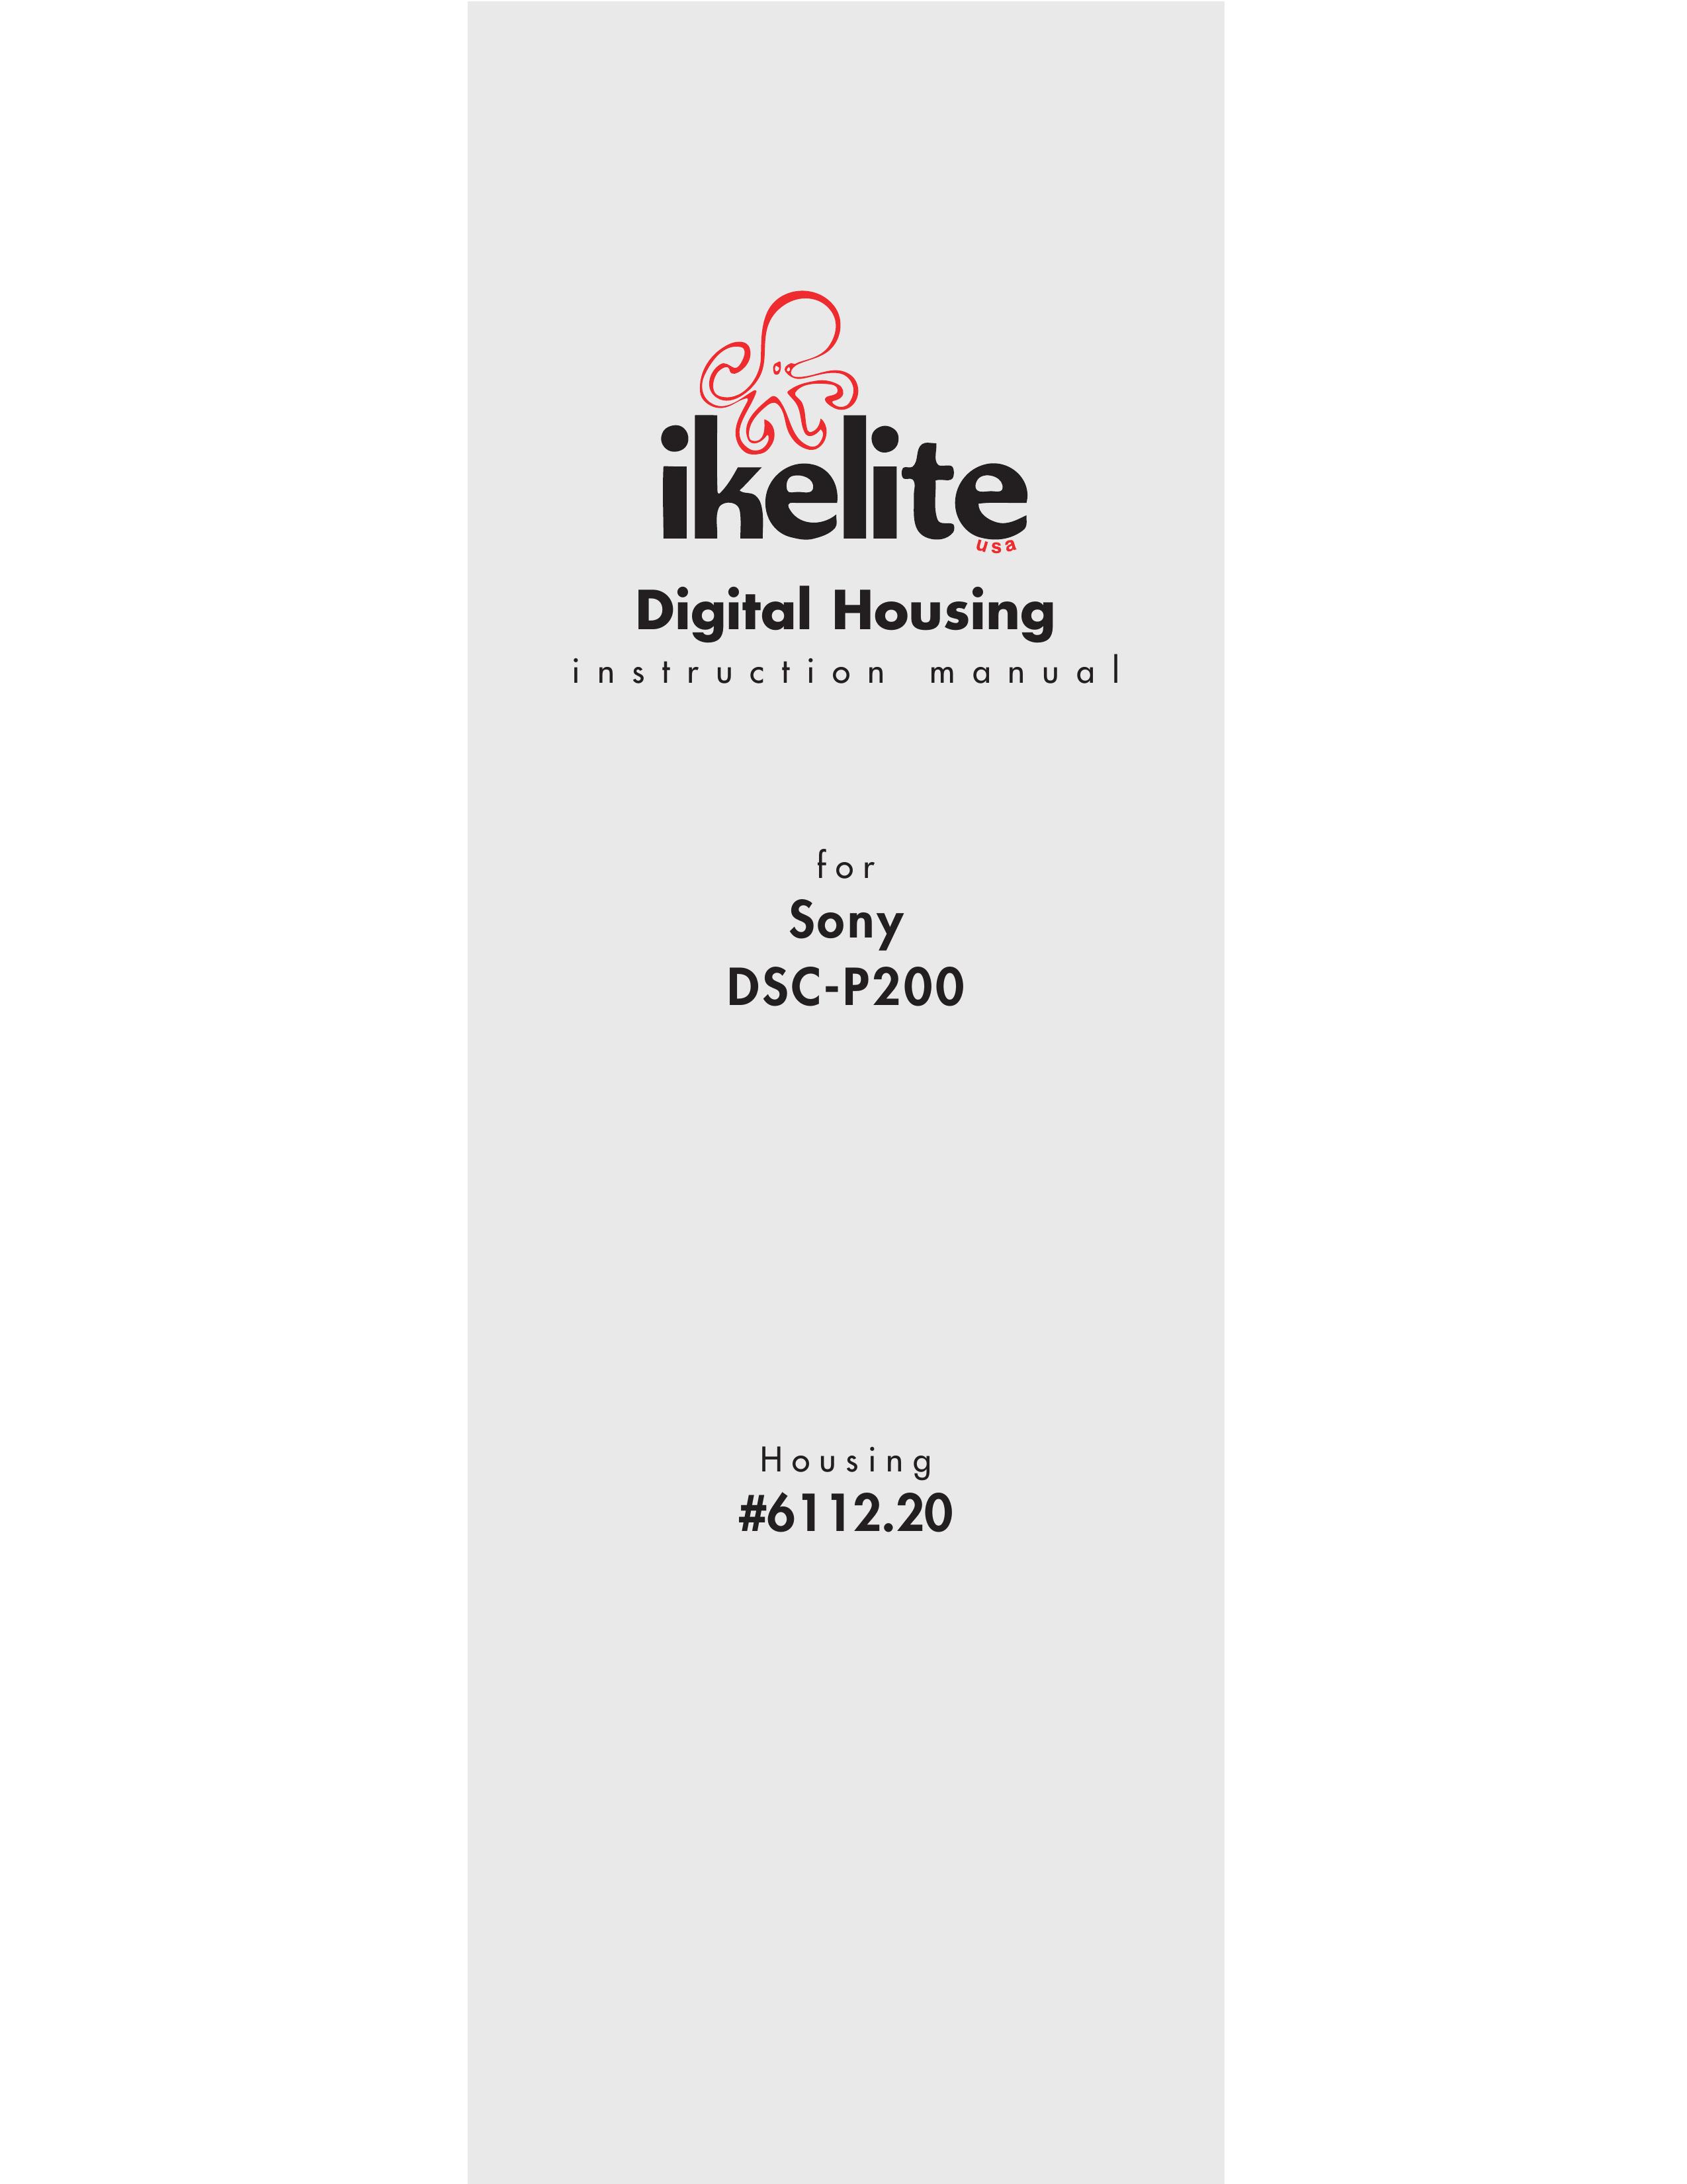 Ikelite DSC-P200 Digital Camera User Manual